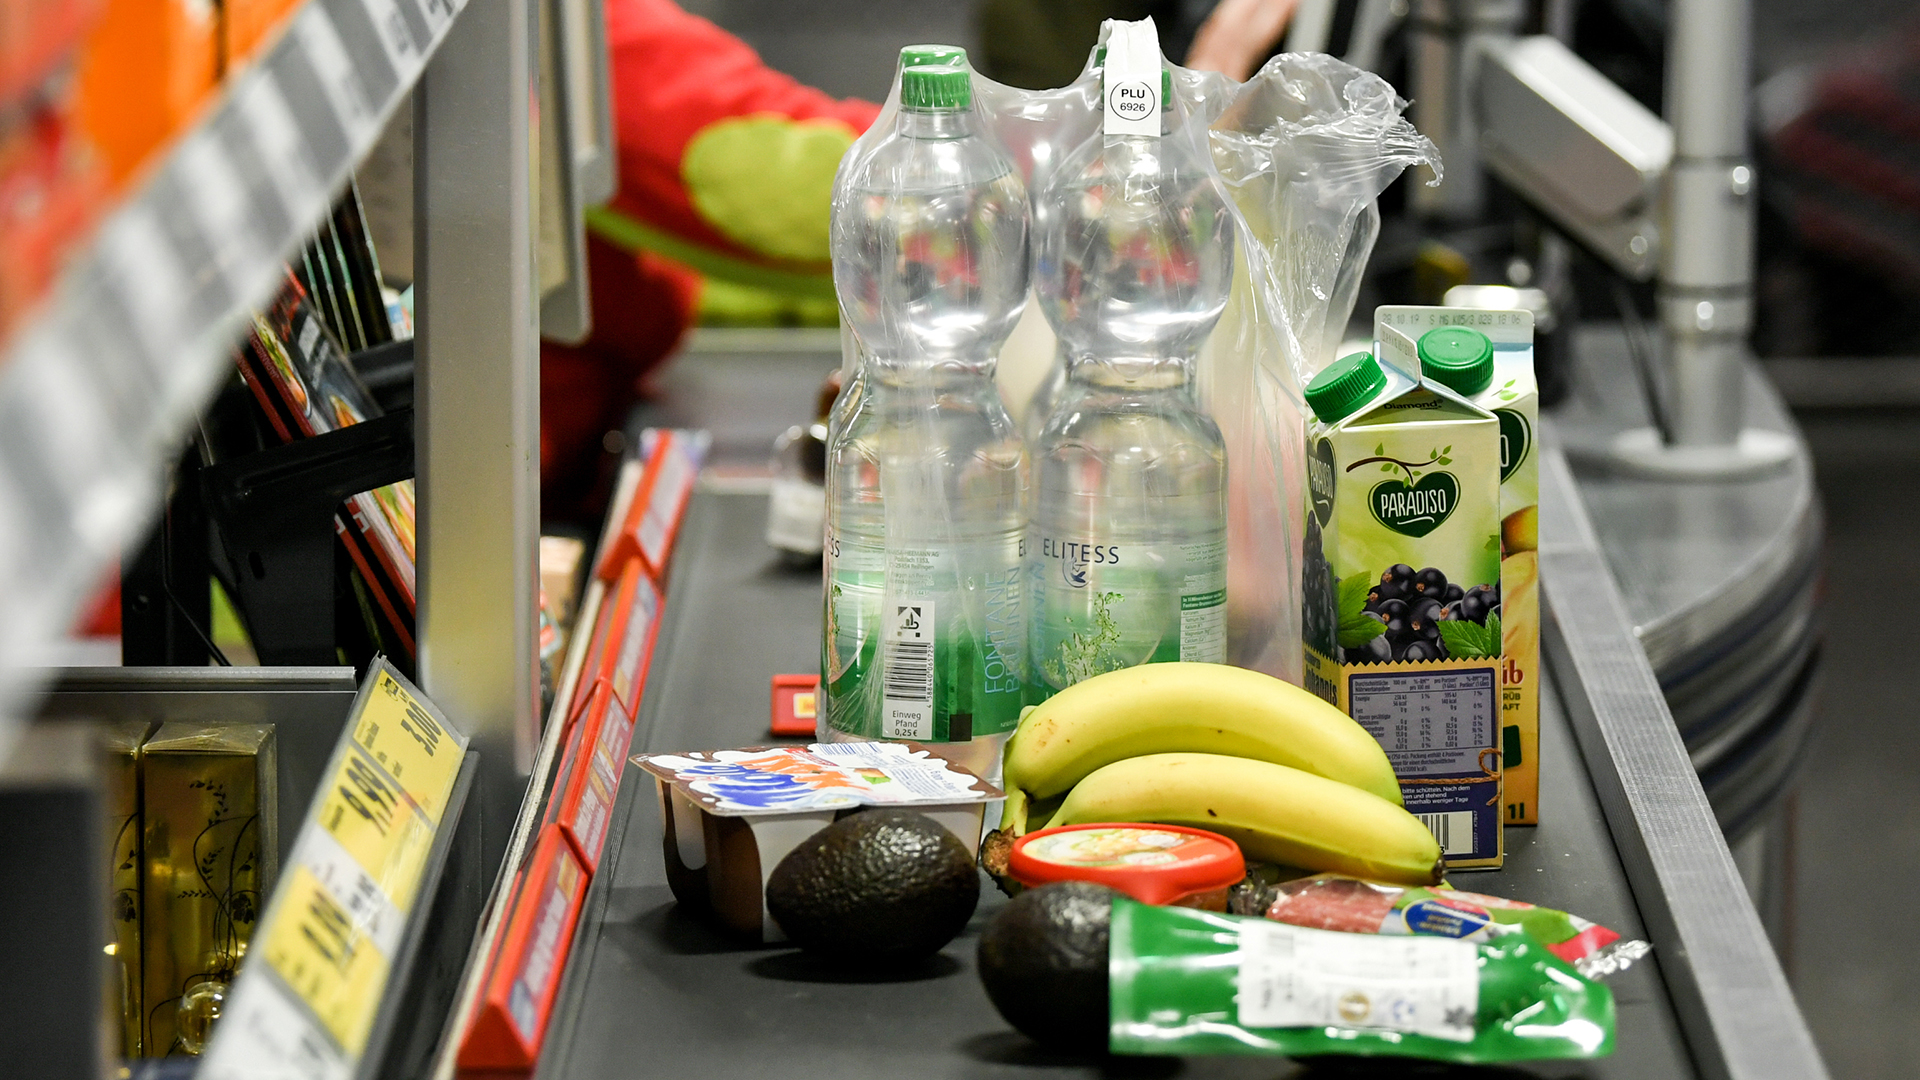 Lebensmittel liegen auf dem Band an einer Kasse in einem Supermarkt.